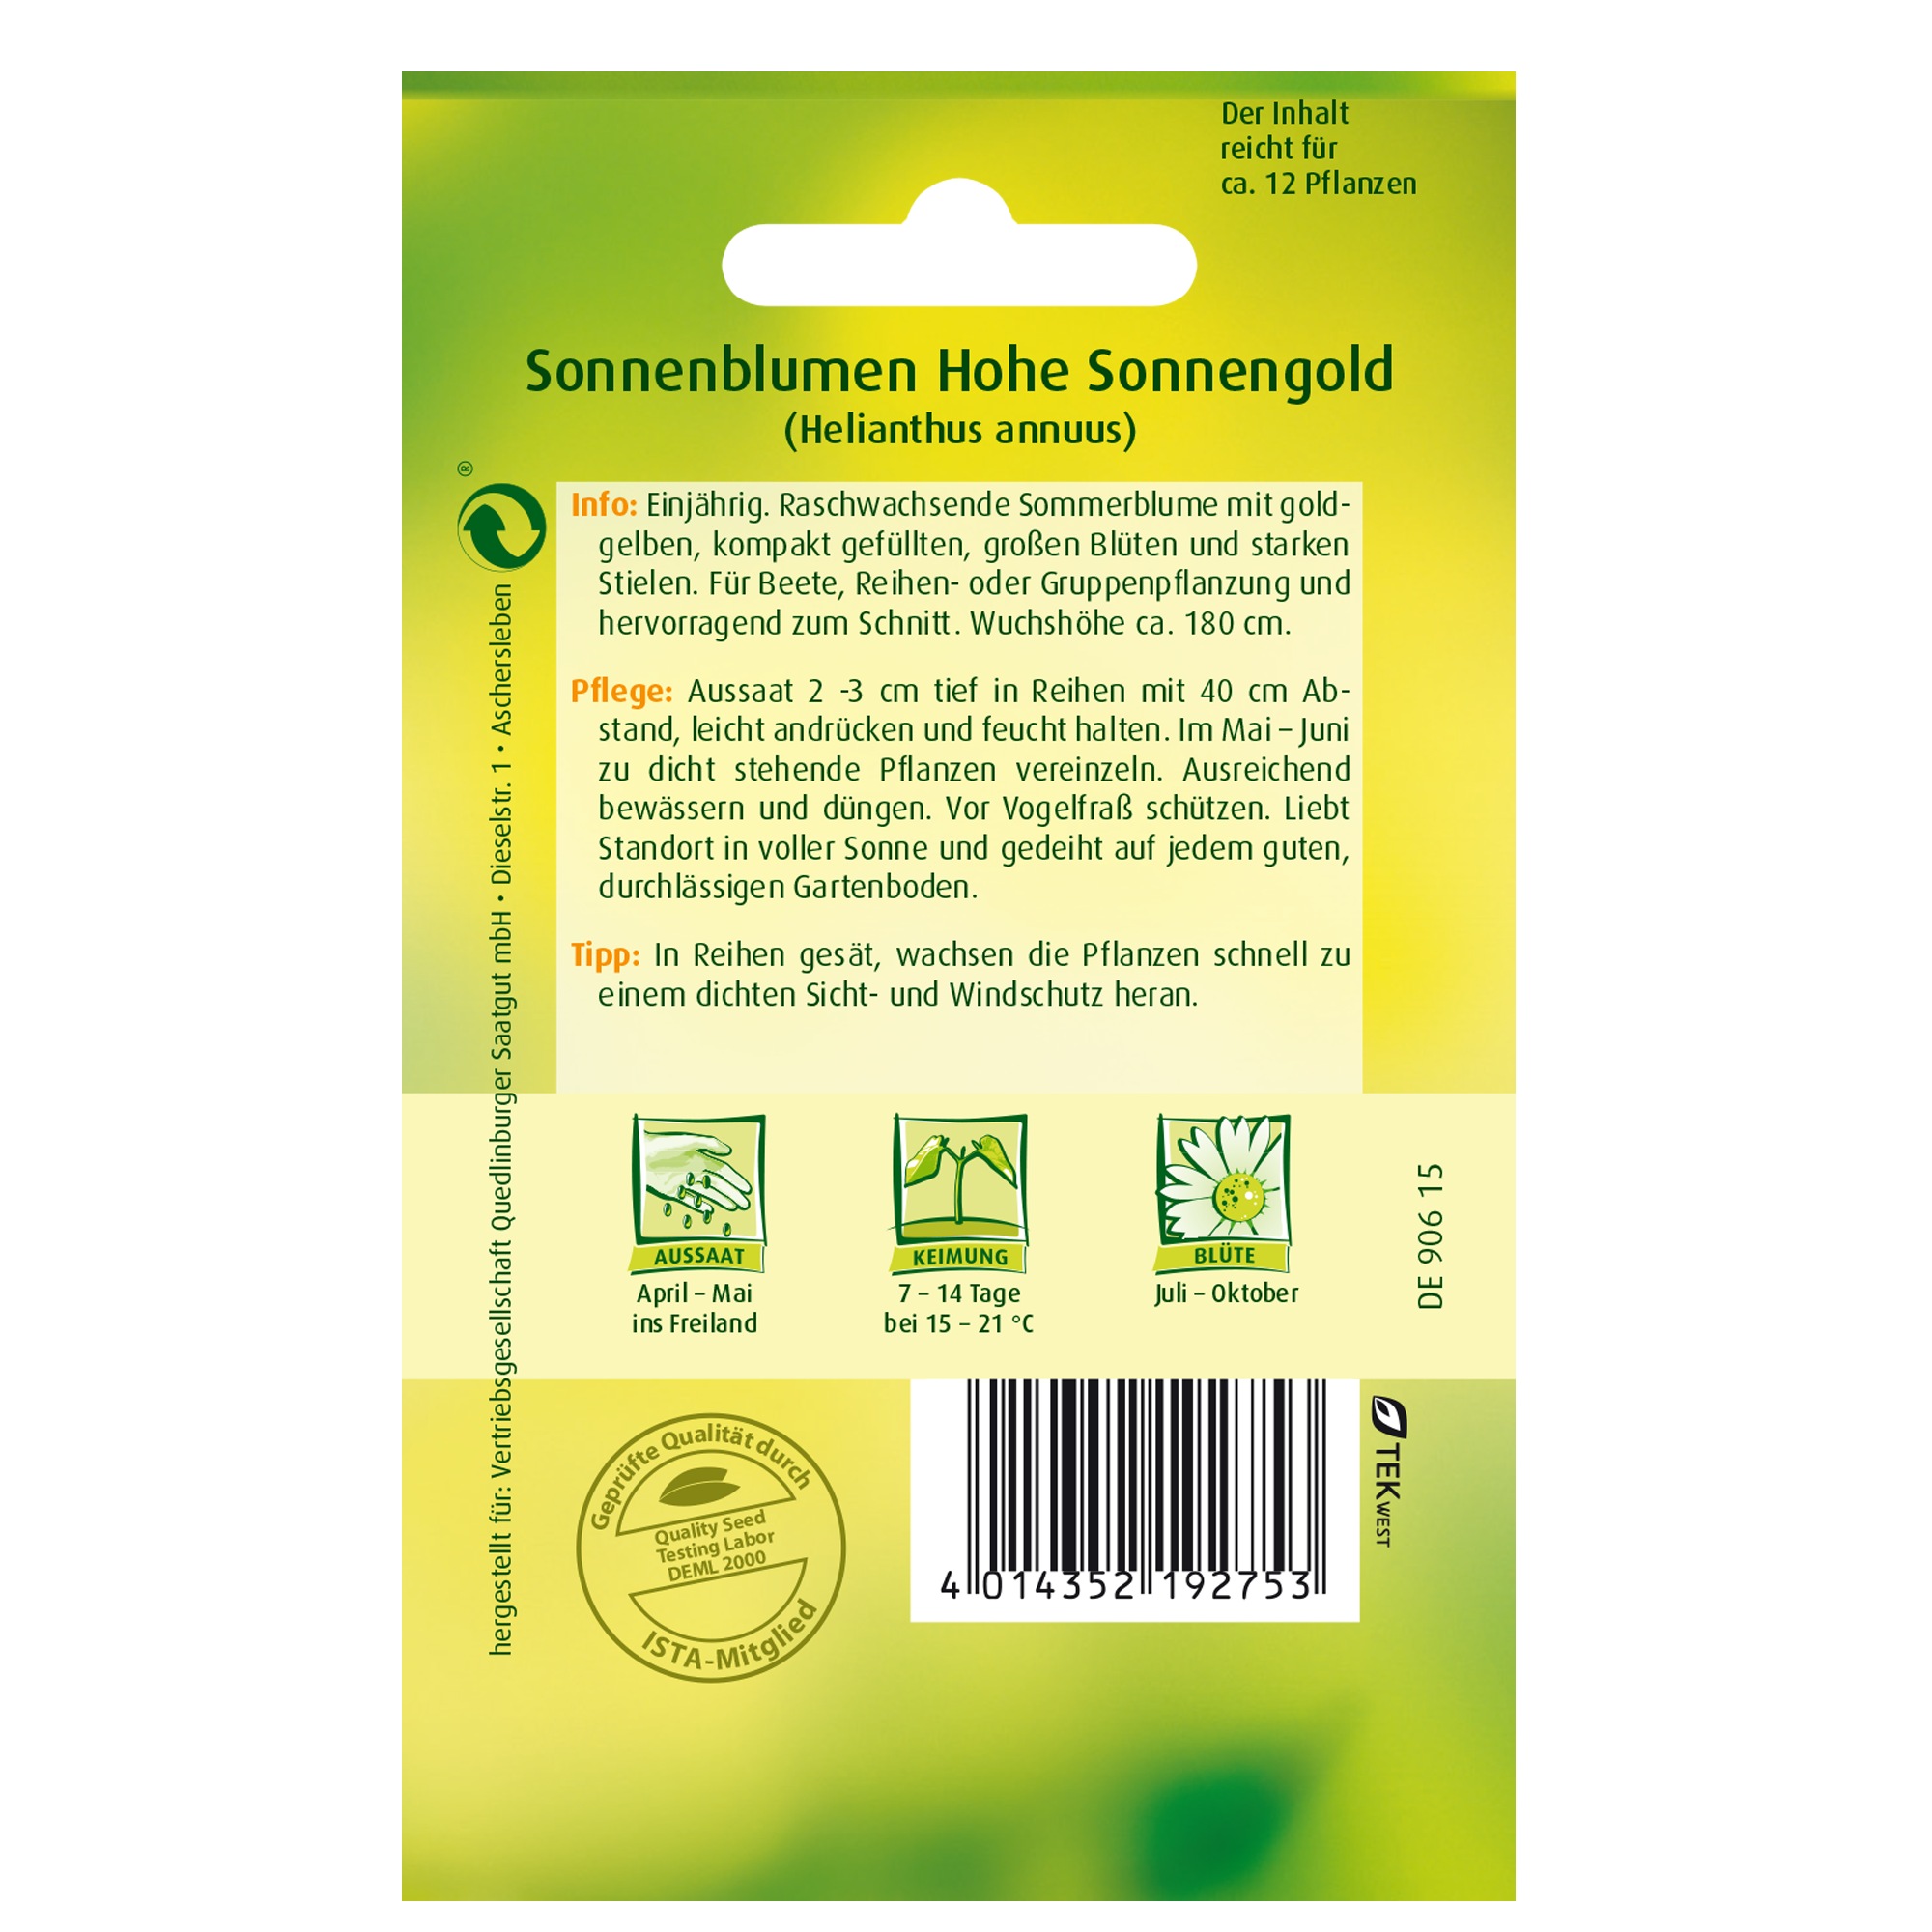 Sonnenblumen 'Hohe Sonnengold' + product picture